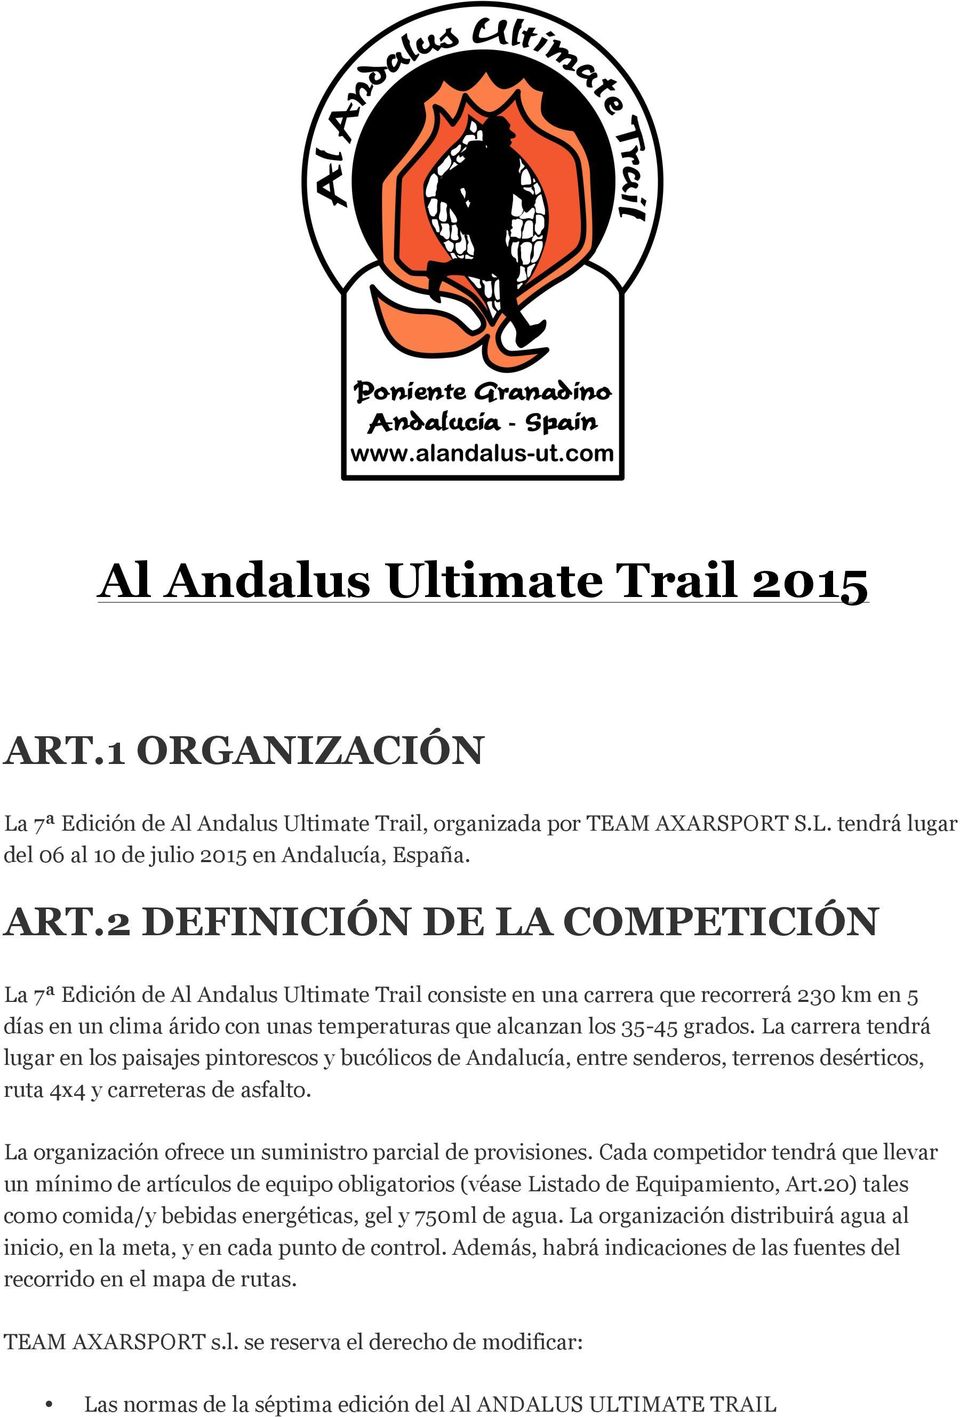 2 DEFINICIÓN DE LA COMPETICIÓN La 7ª Edición de Al Andalus Ultimate Trail consiste en una carrera que recorrerá 230 km en 5 días en un clima árido con unas temperaturas que alcanzan los 35-45 grados.